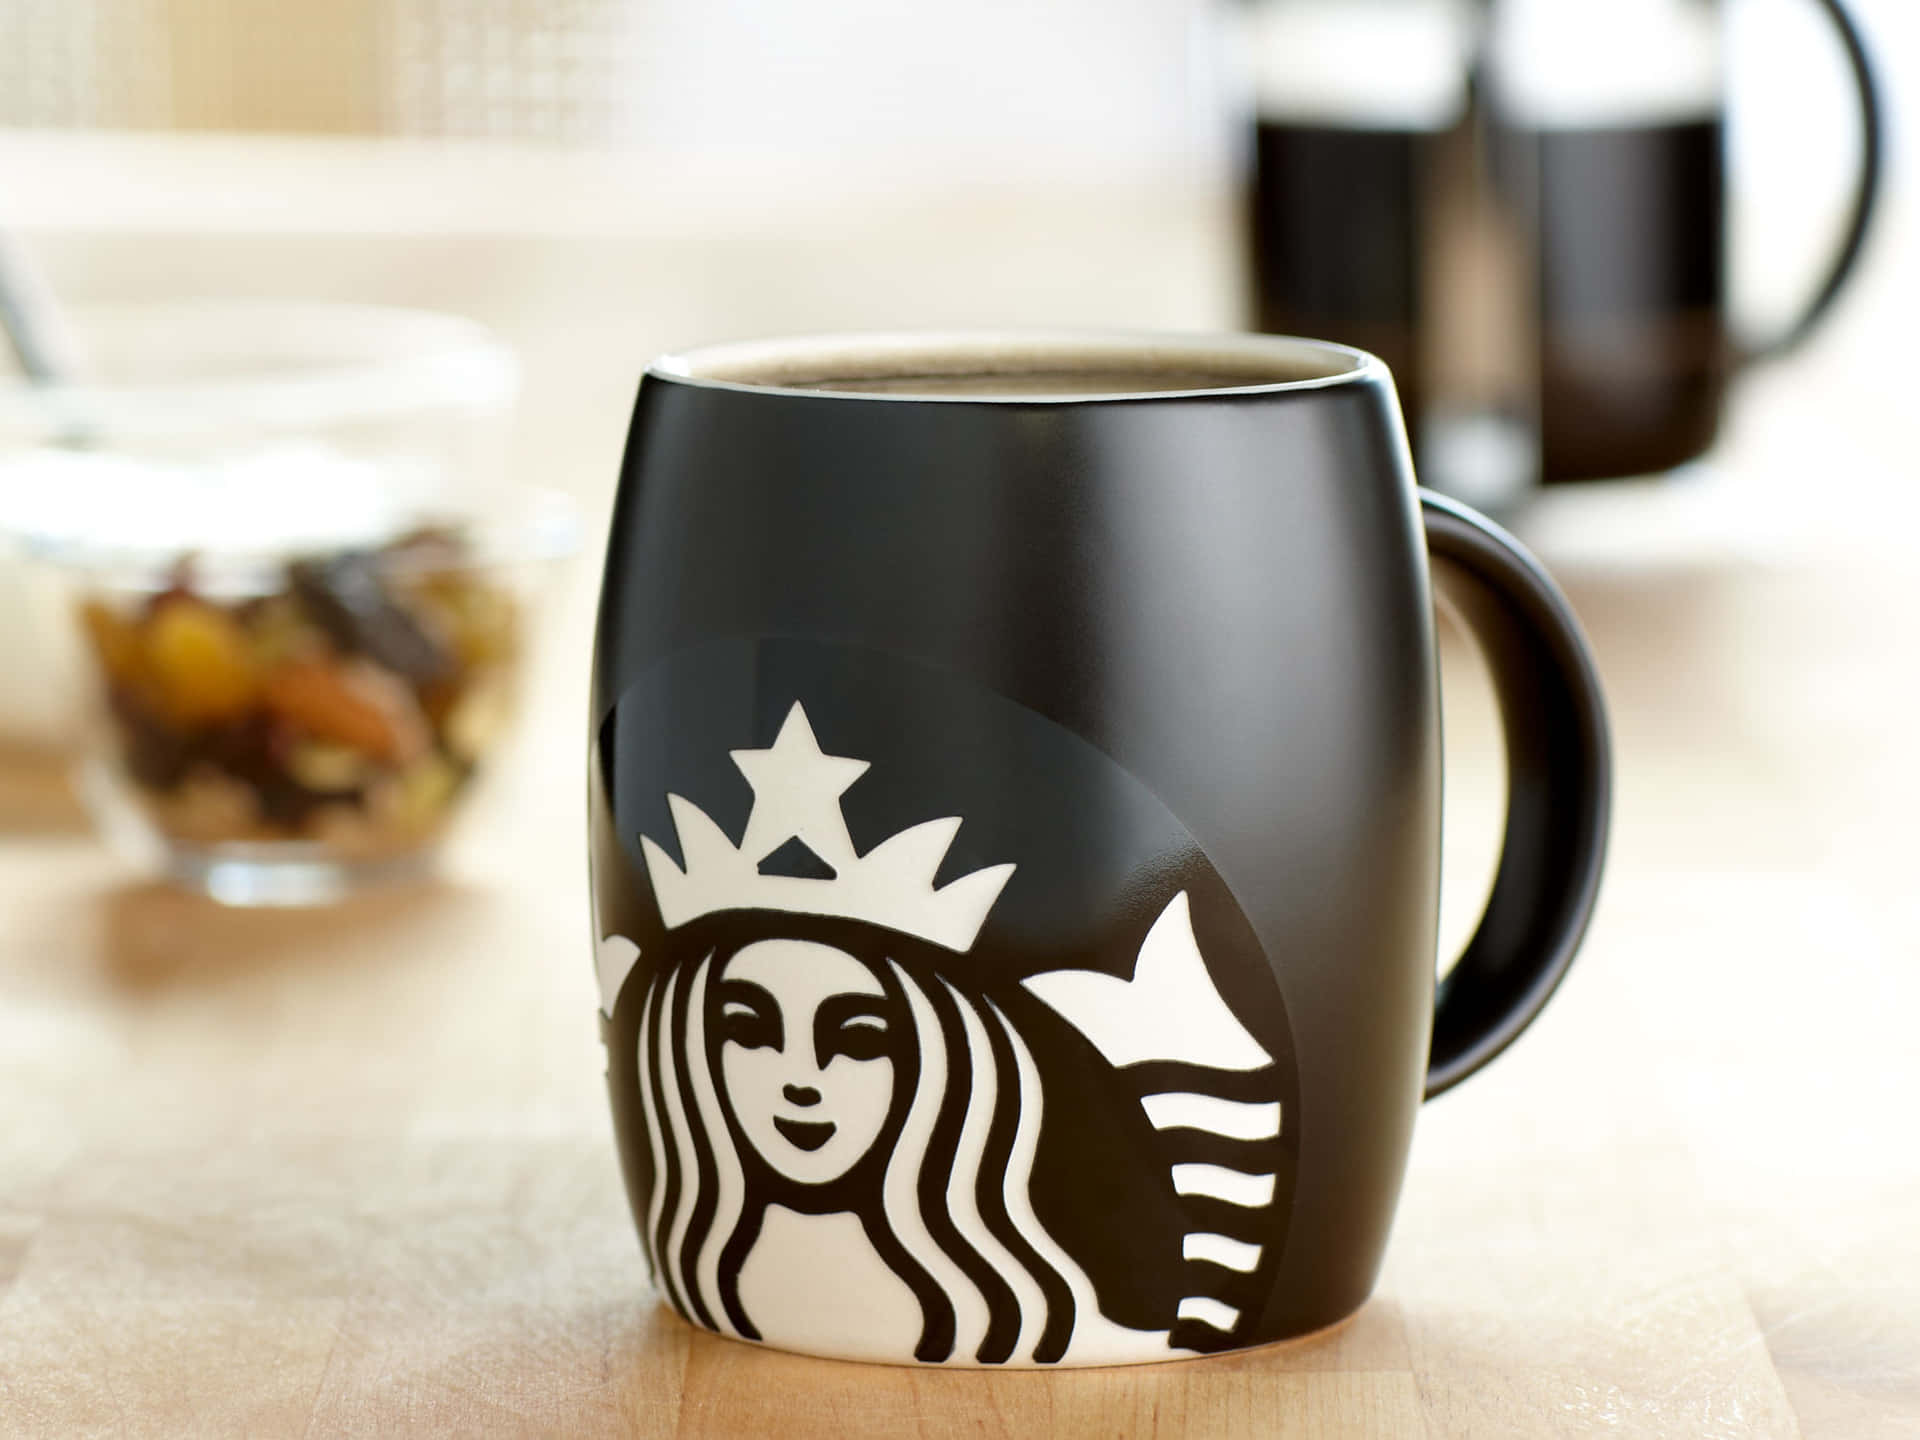 Genießensie Eine Perfekte Tasse Kaffee Mit Einem Klassischen Starbucks-erlebnis.